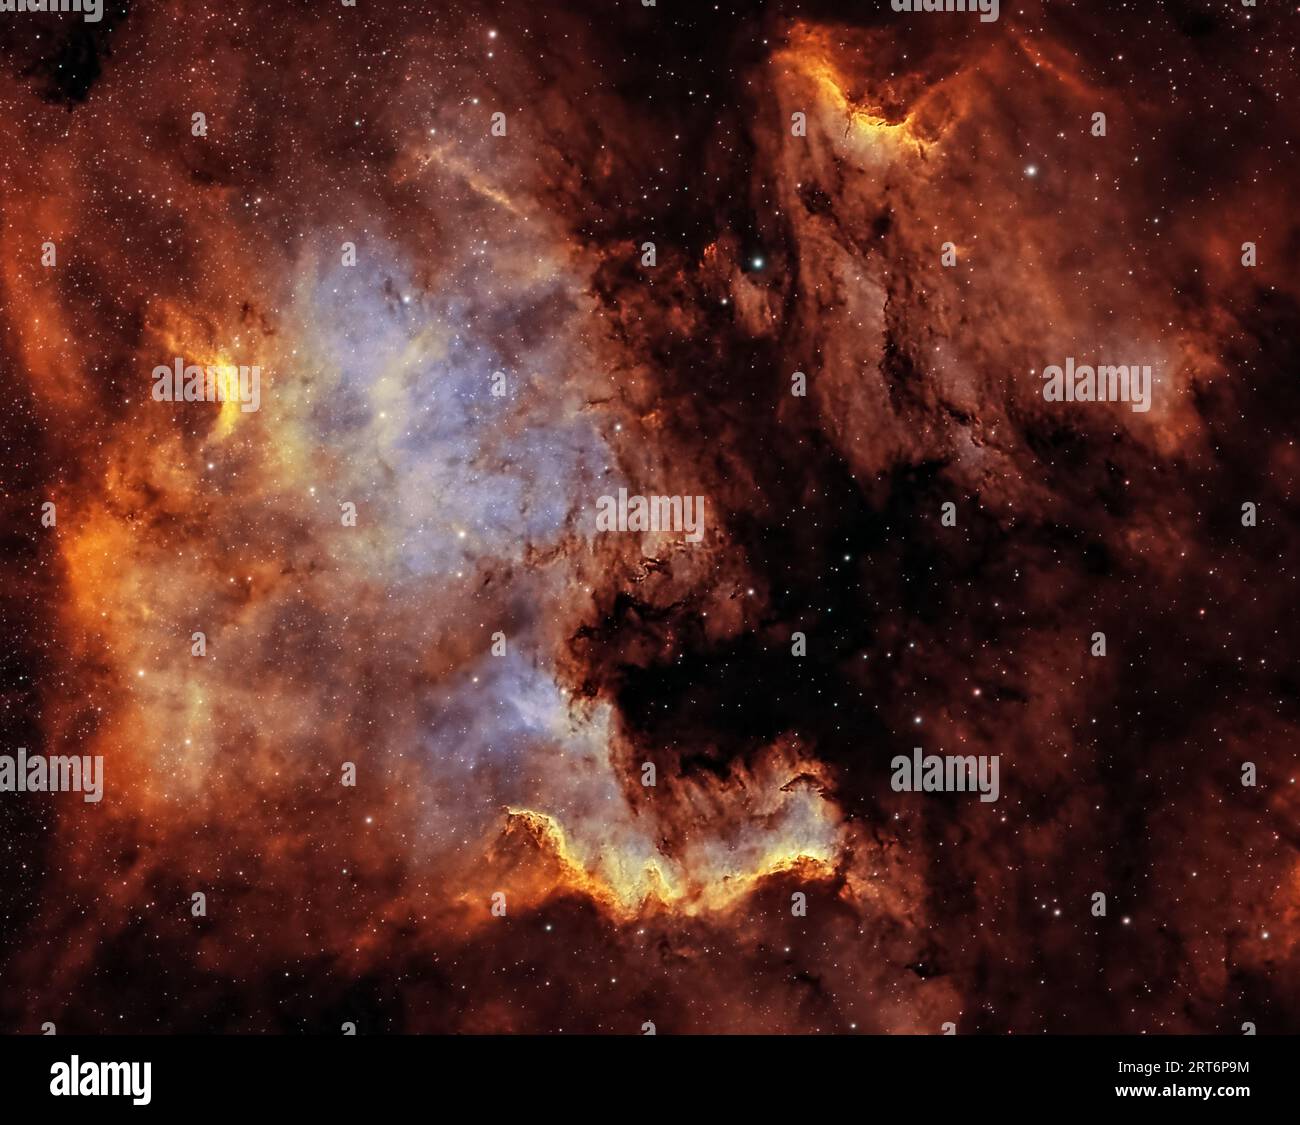 Ammira il Nord America e Pelican Nebulae, un affascinante duo celeste. Queste intricate nubi di gas e polvere, annidate nella costellazione del Cigno. Foto Stock